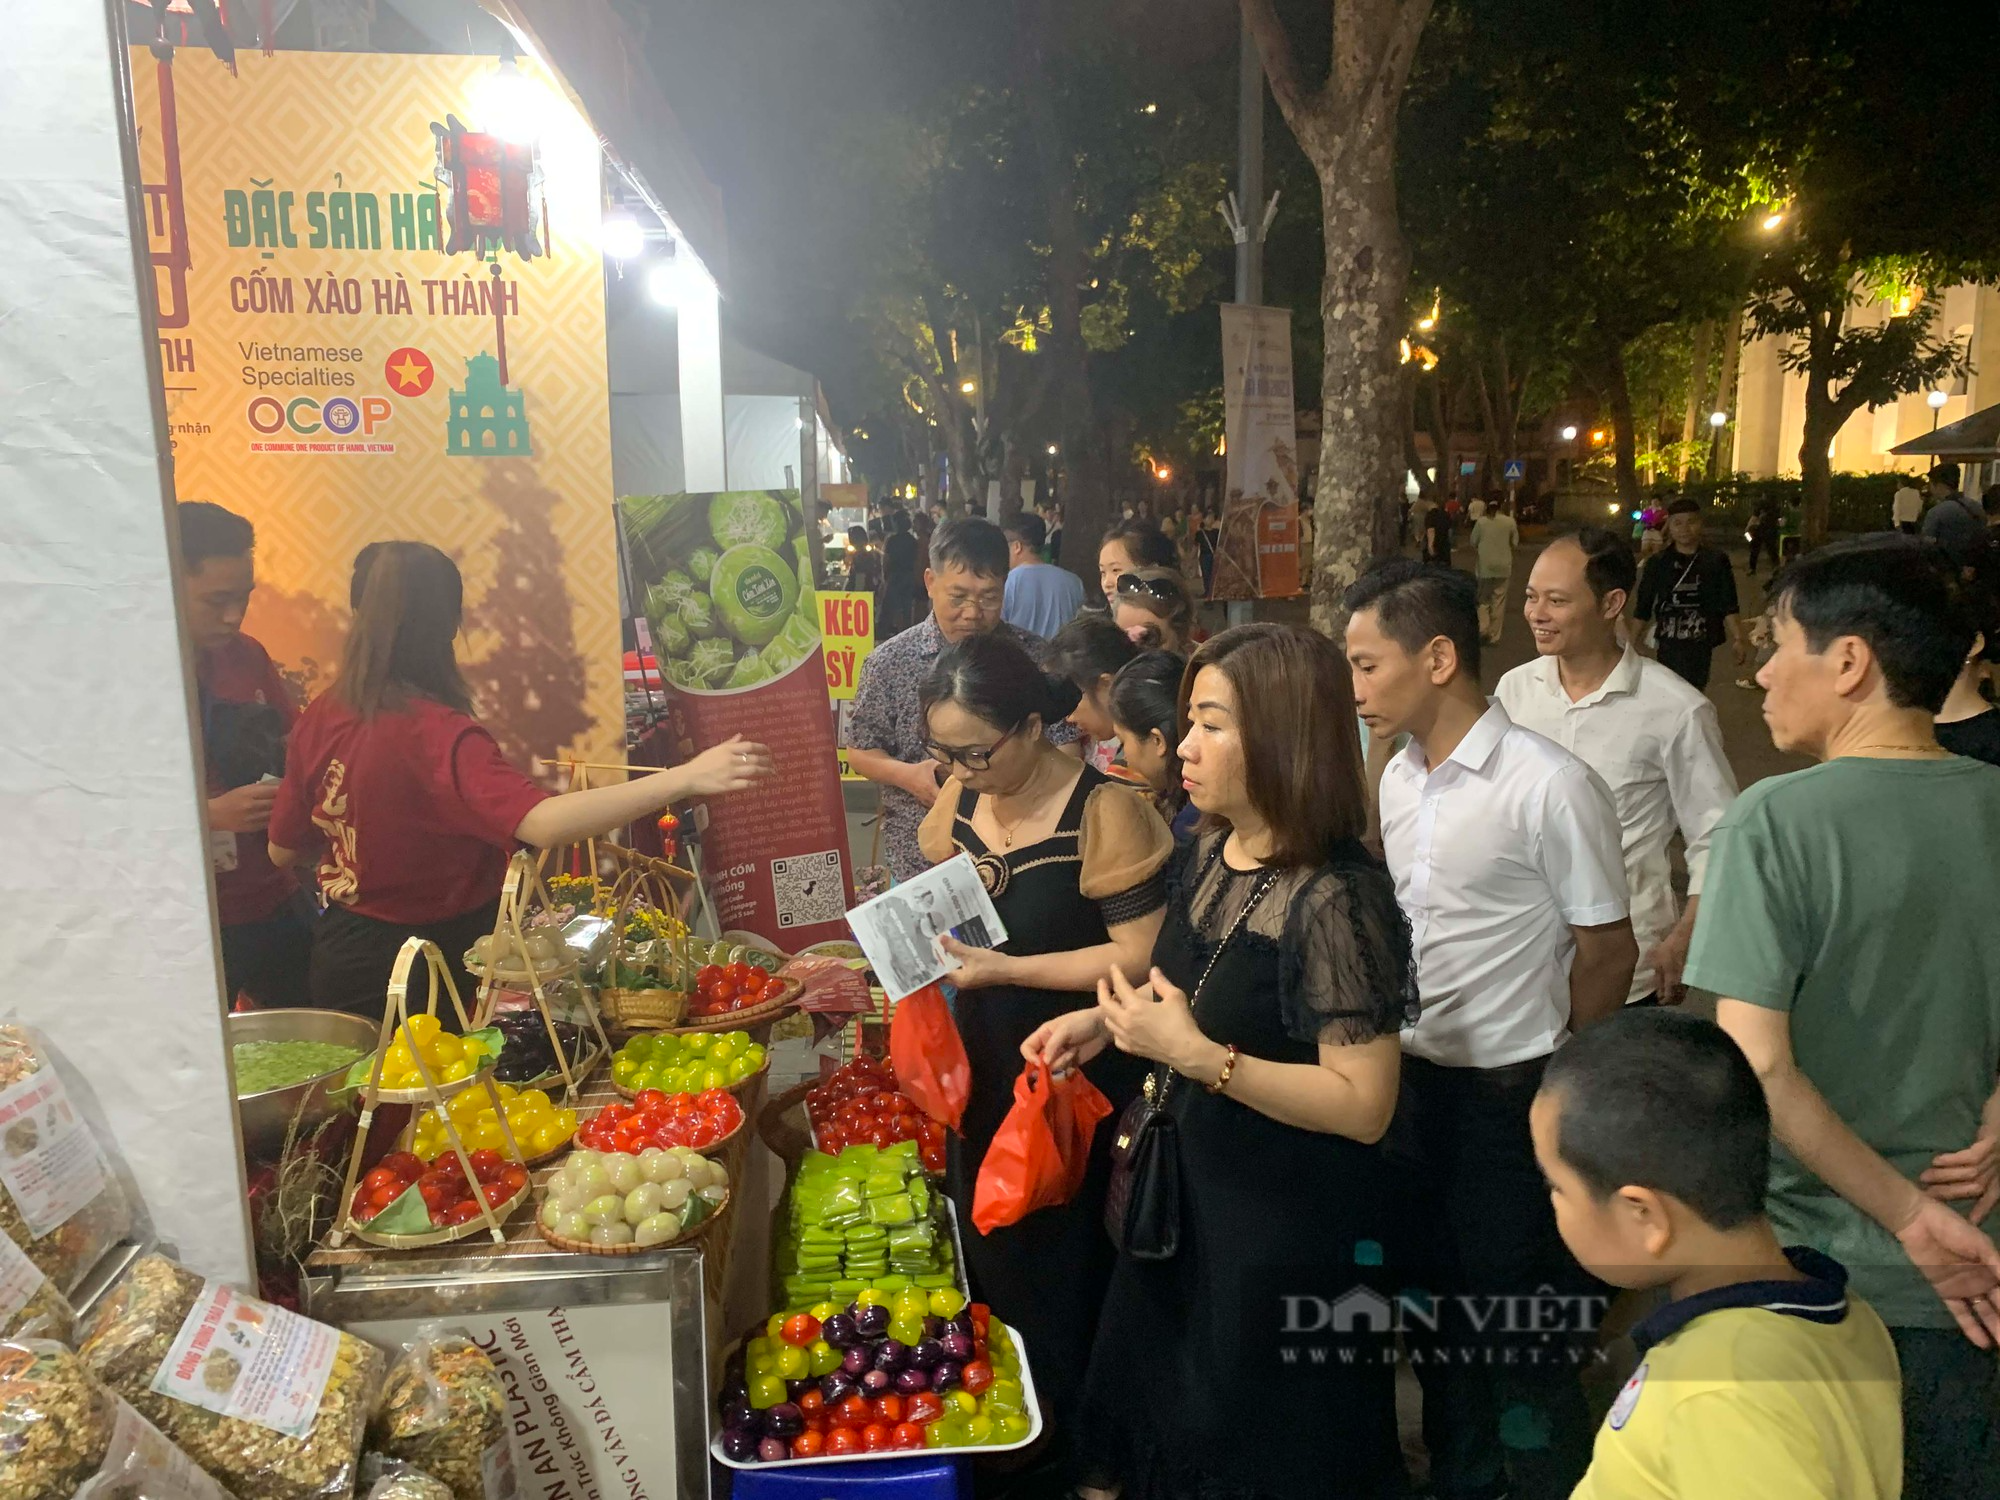 Hàng loạt các hoạt động du lịch, văn hóa hấp dẫn tại Hà Nội trong kỳ nghỉ lễ 30/4-1/5 - Ảnh 1.